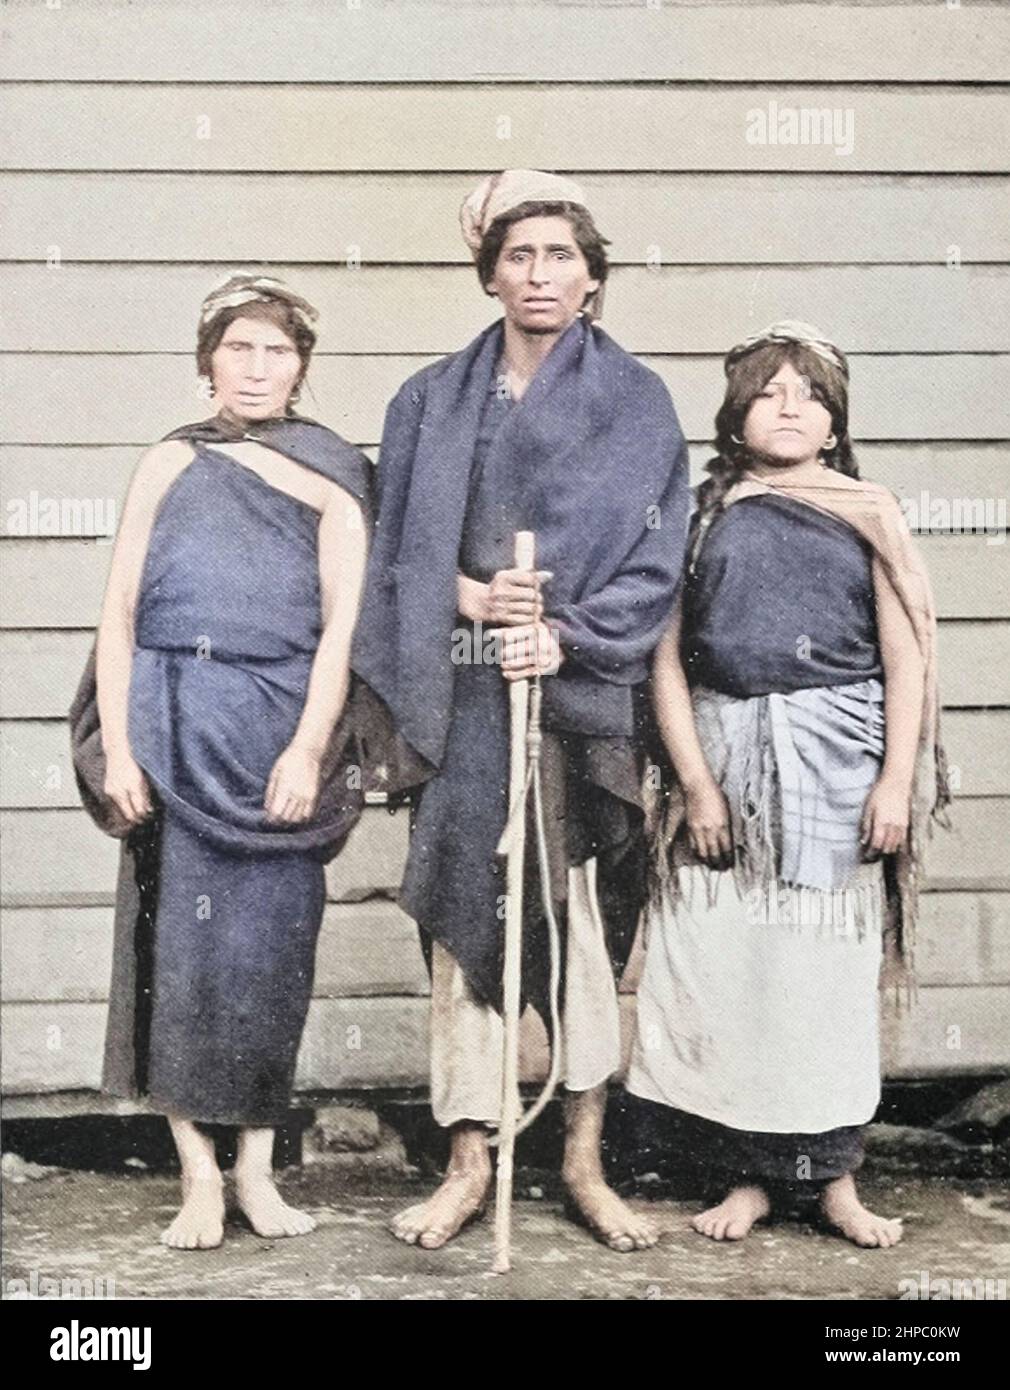 Maschinell colorierte Mapuche Eingeborene von Araucania die Mapuche sind eine Gruppe indigener Bewohner des heutigen Süd-zentralen Chiles und des Südwestargentins, einschließlich Teilen des heutigen Patagonien. Aus dem Buch The living Races of Mankind; Band 2 von Henry Neville Hutchinson, veröffentlicht 1901 in London von Hutchinson & Co Stockfoto